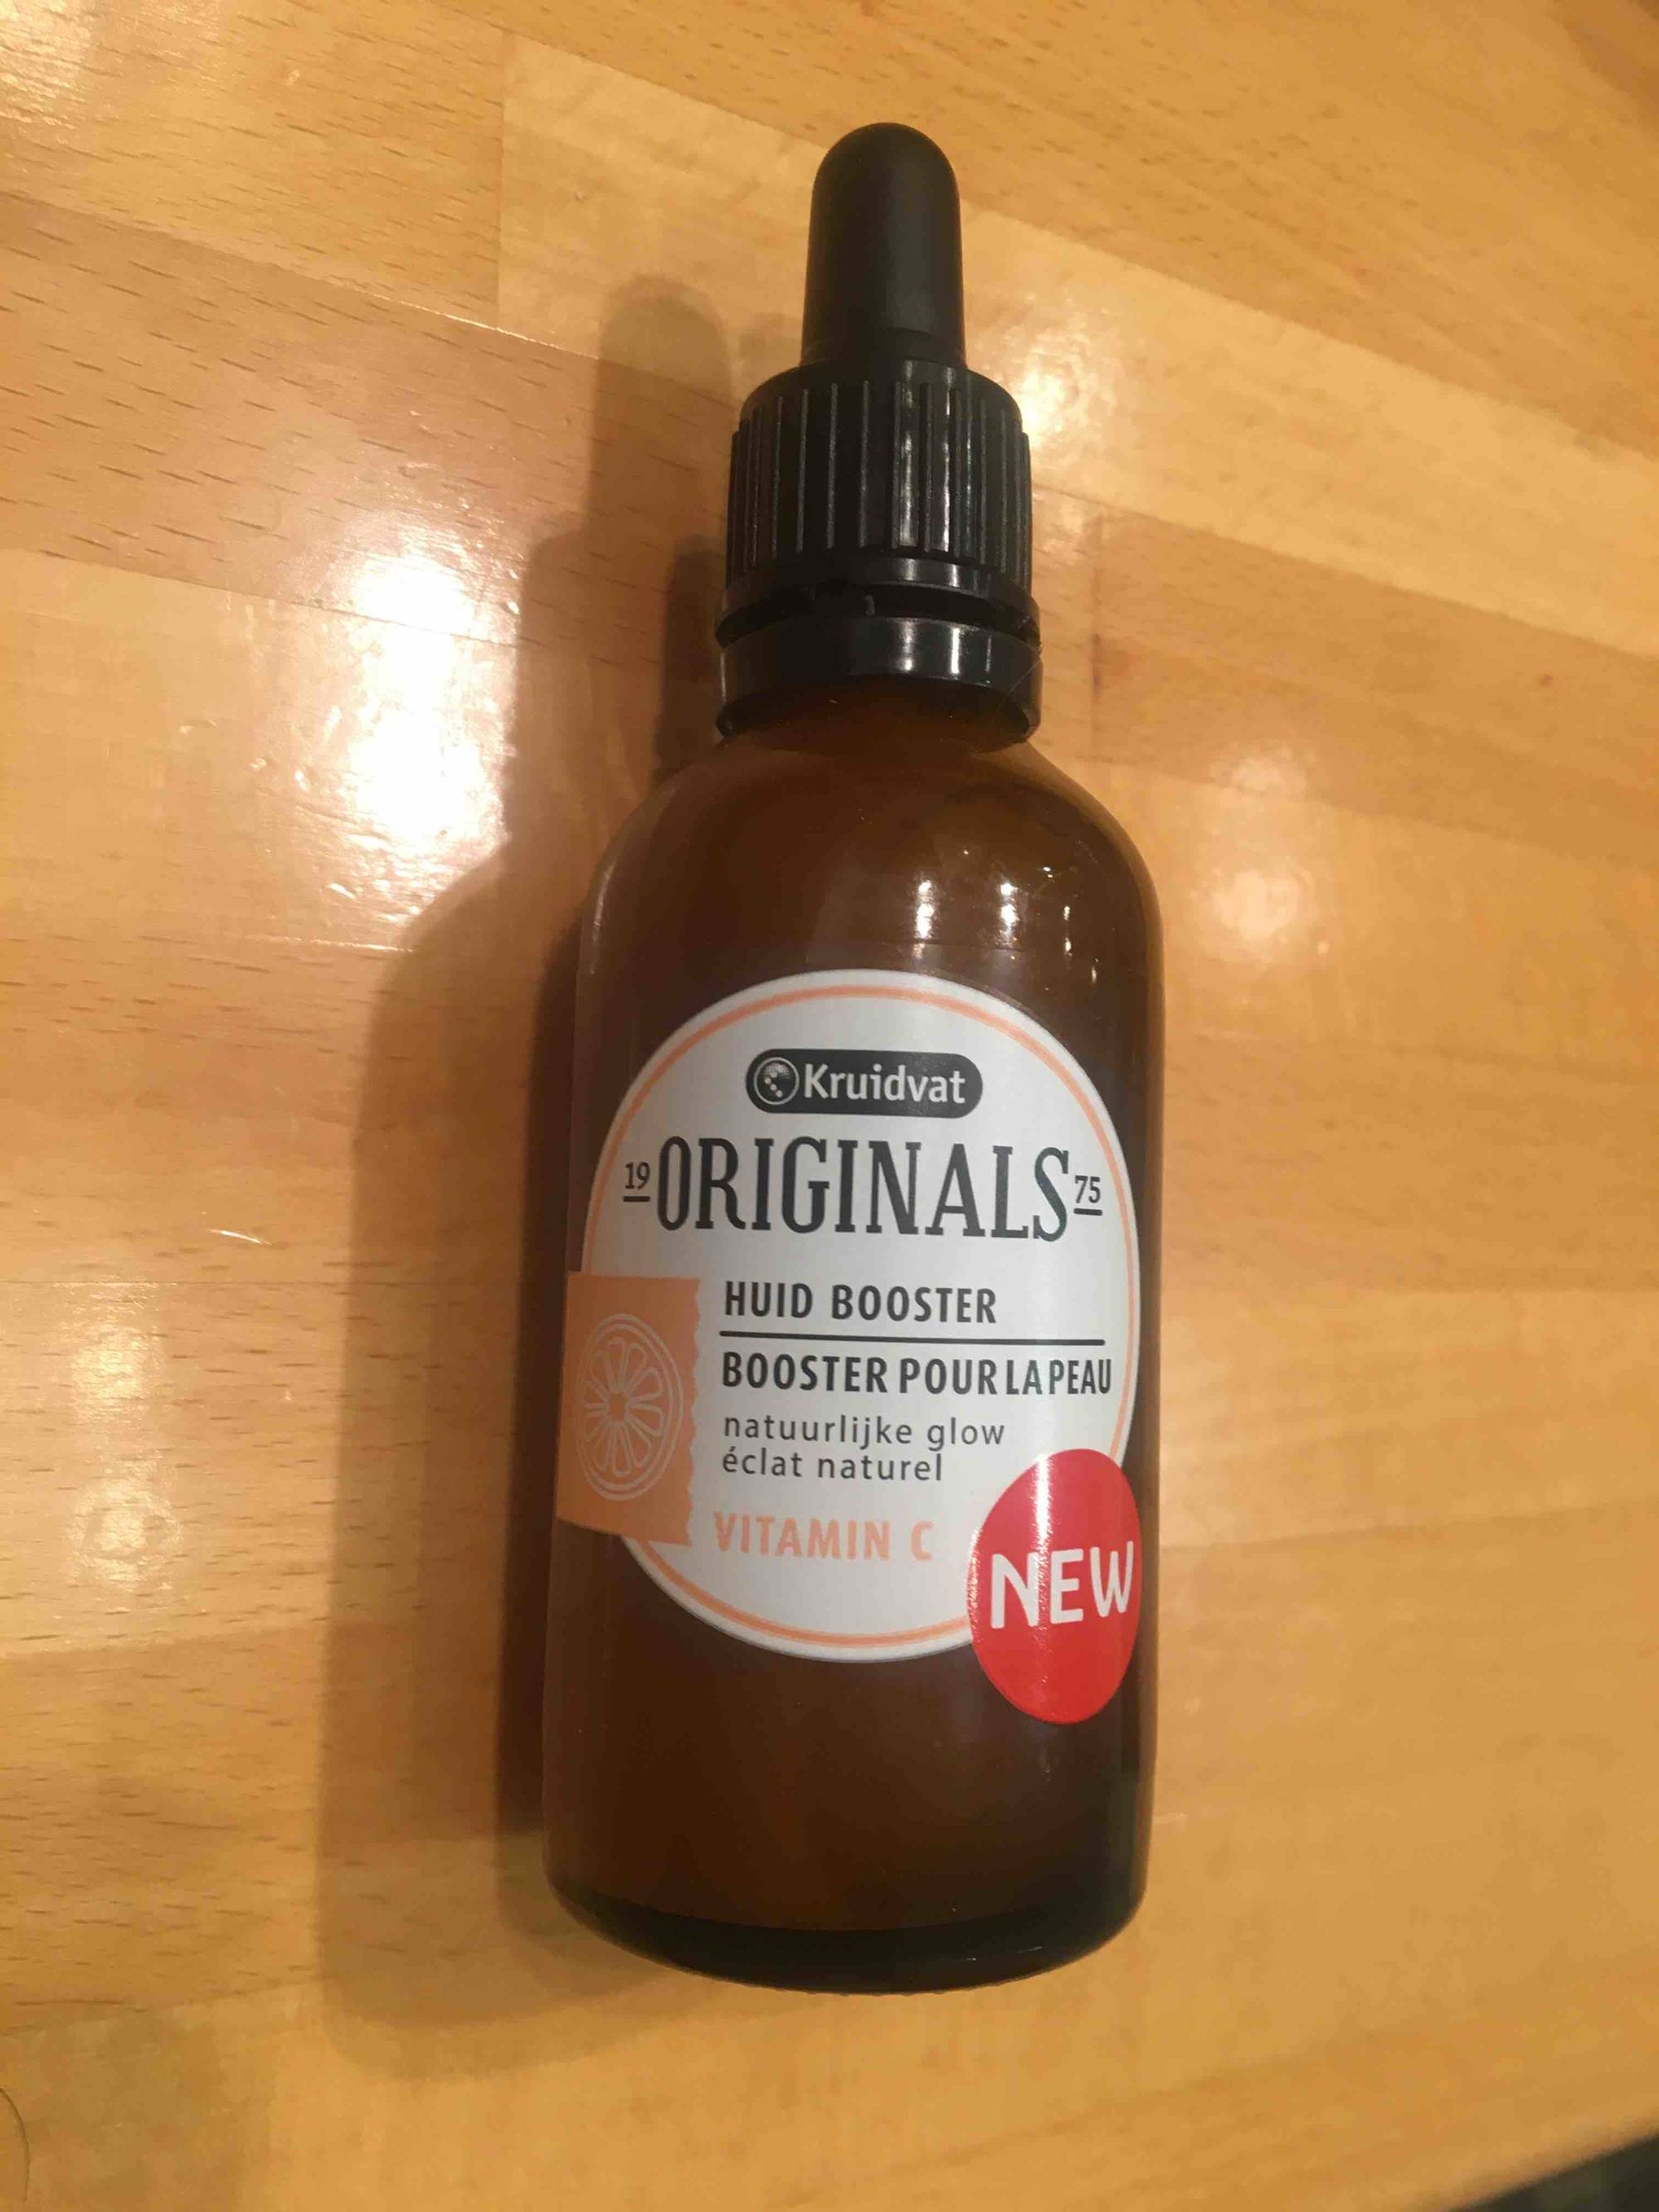 KRUIDVAT - Originals - Vitamin C booster pour la peau